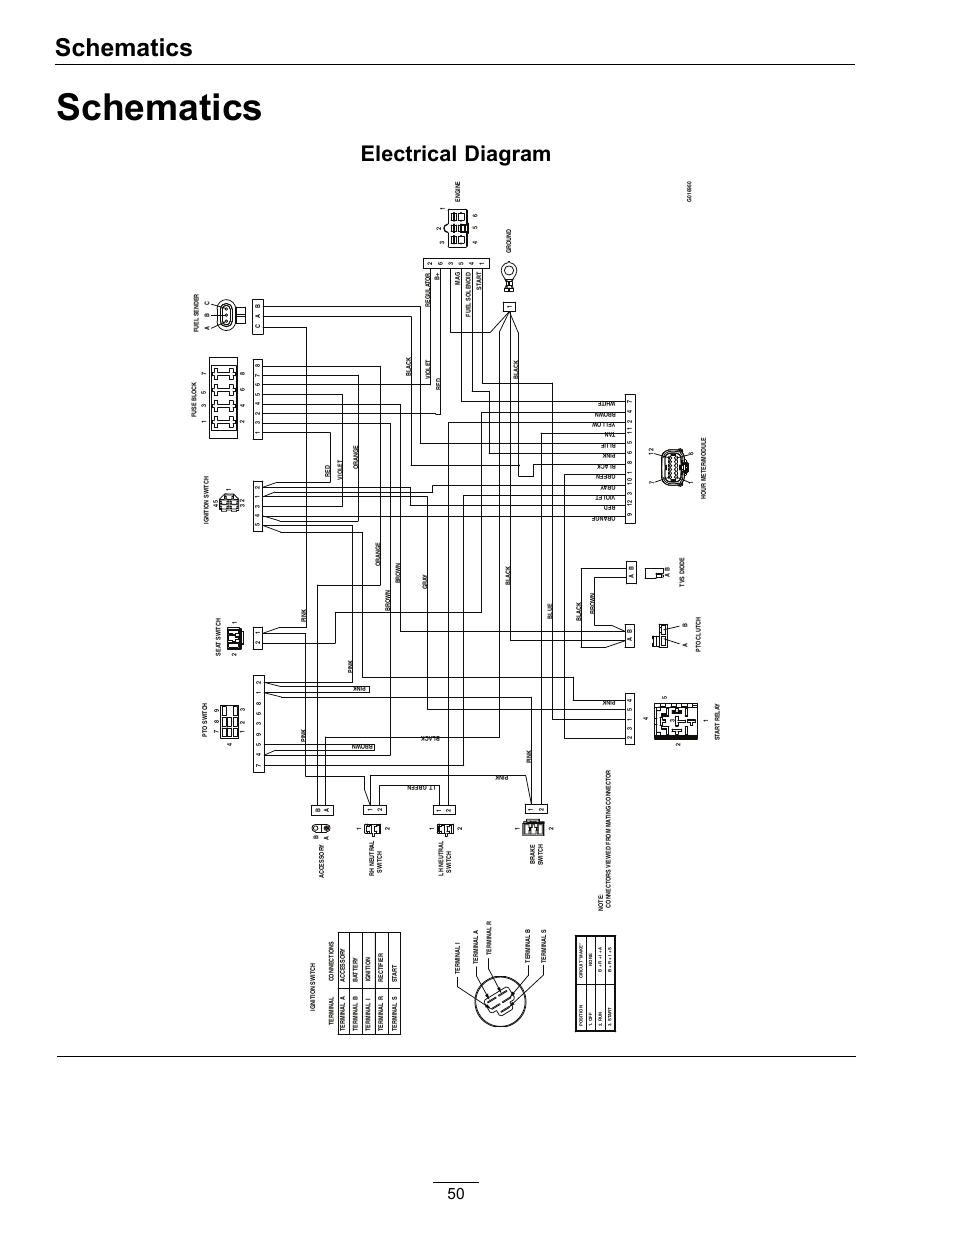 wiring diagram for bose radio in 2005 gmc envoy denali